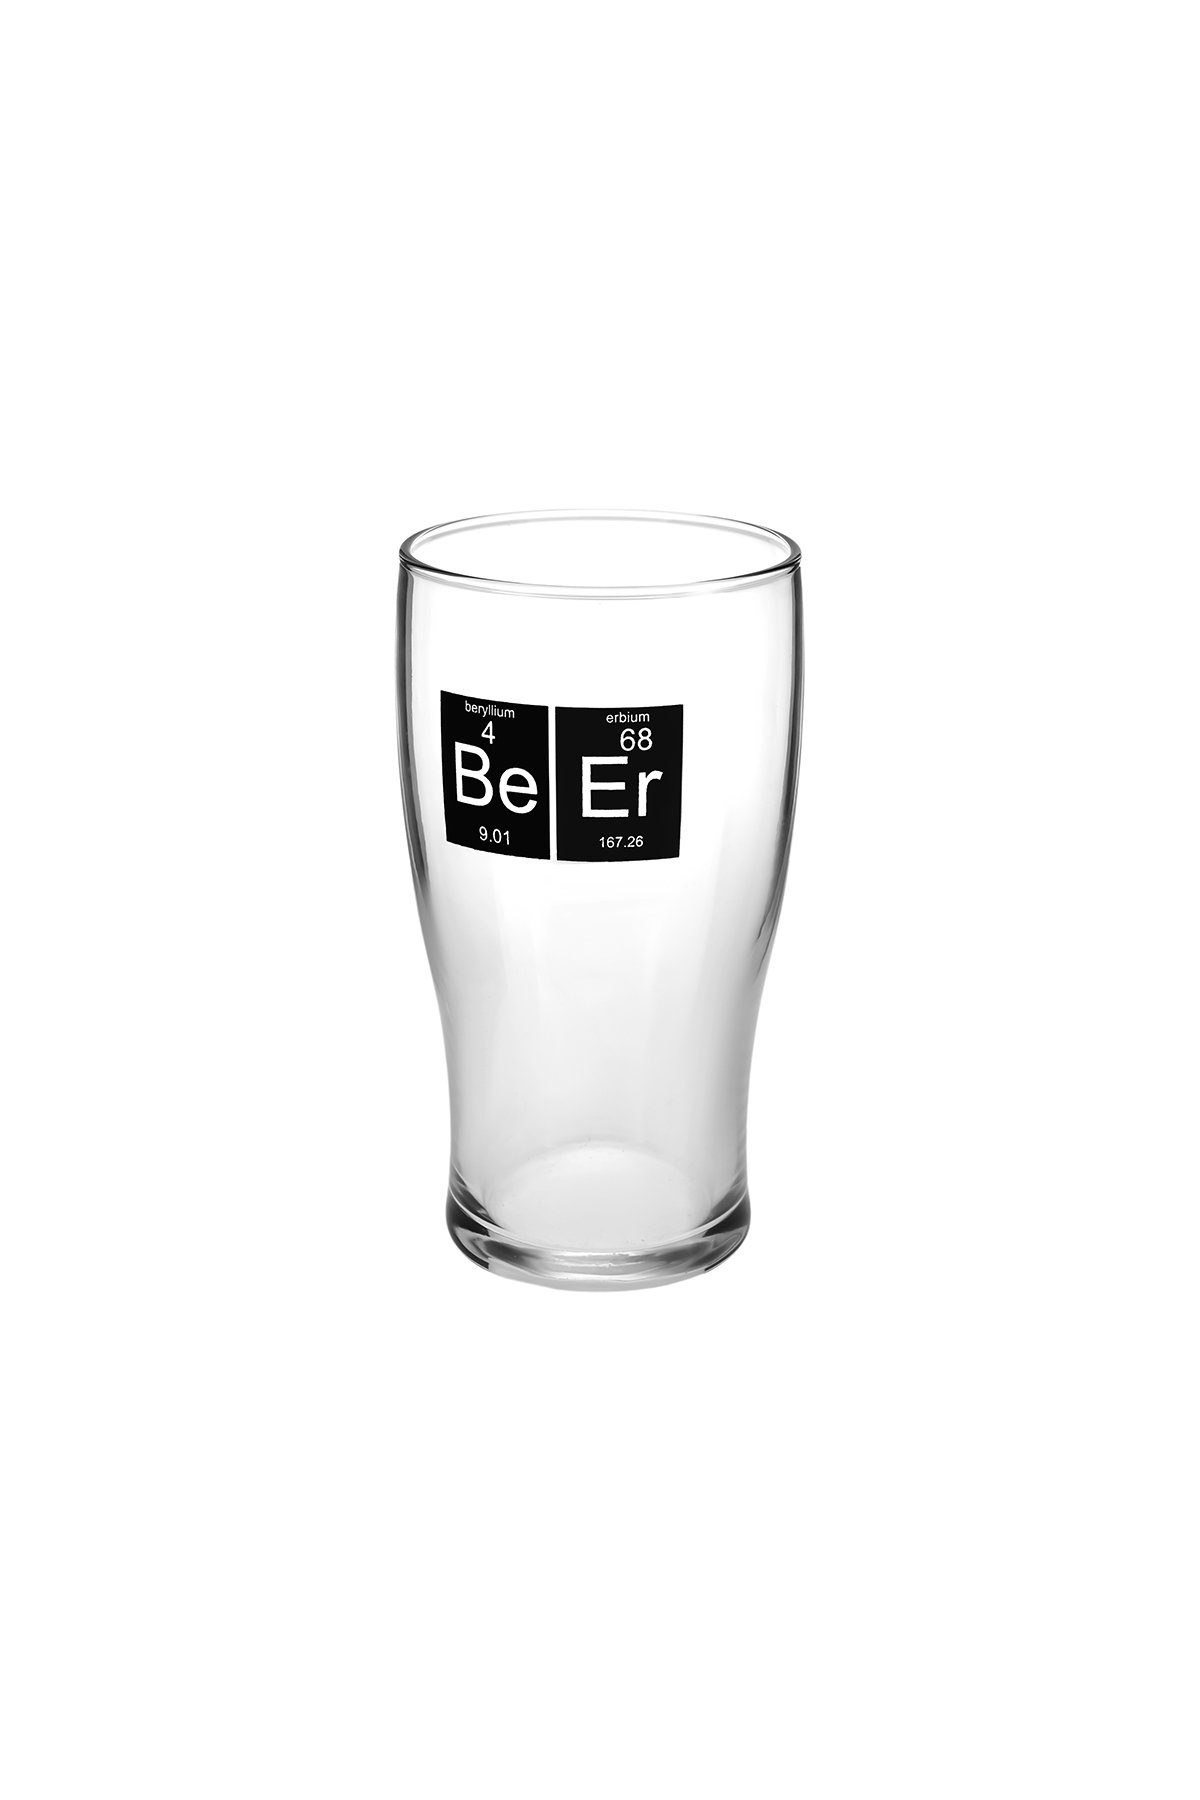 für 2 Glas, Glas Beerbecher Karaca Personen, 454ml Bierglas-set